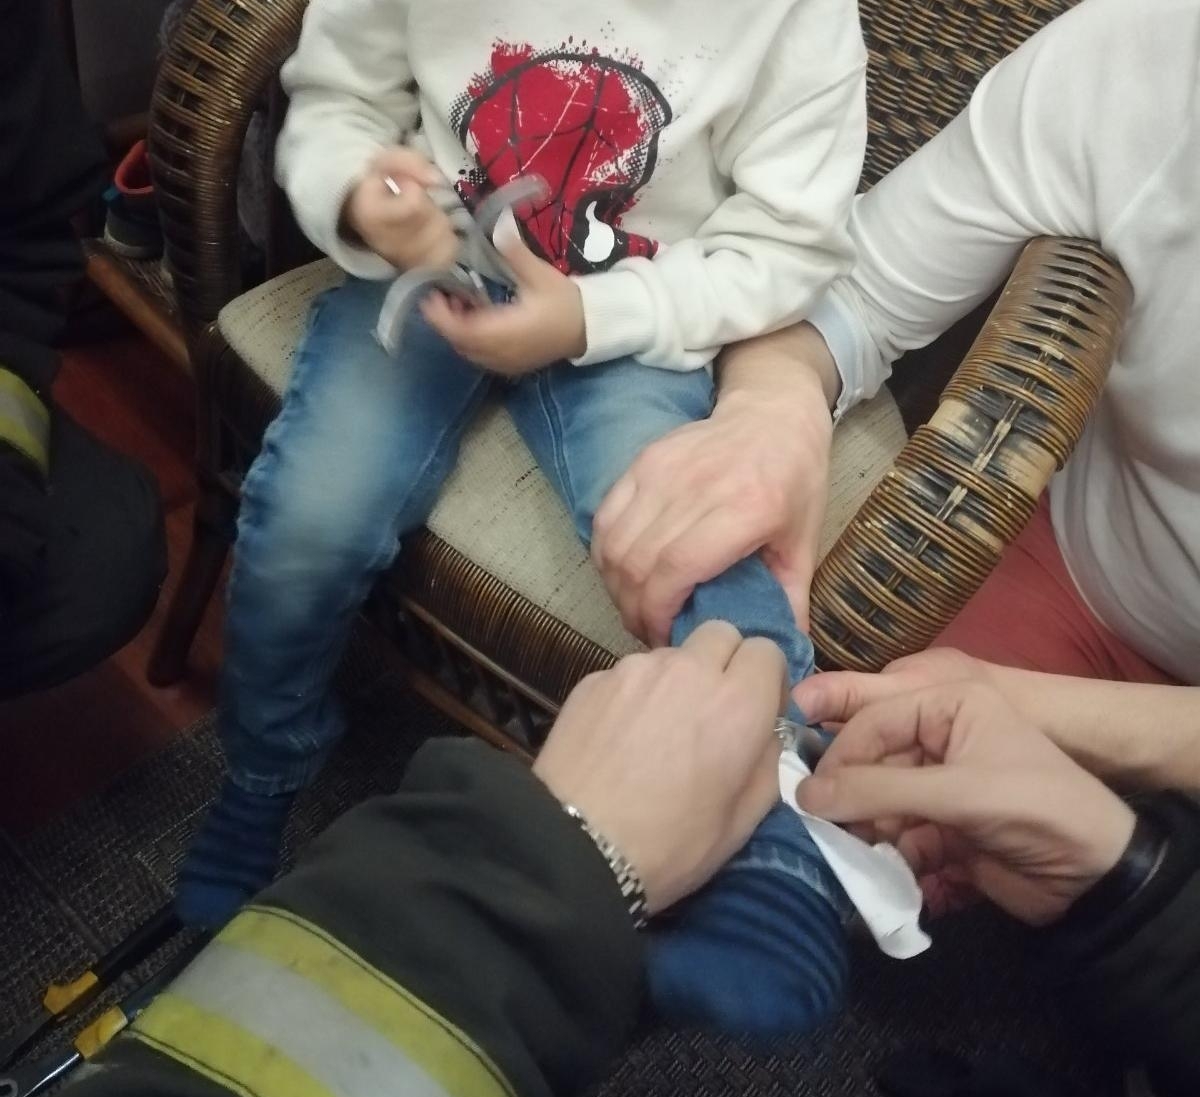 В Минске сотрудники МЧС спасли ребенка из наручников